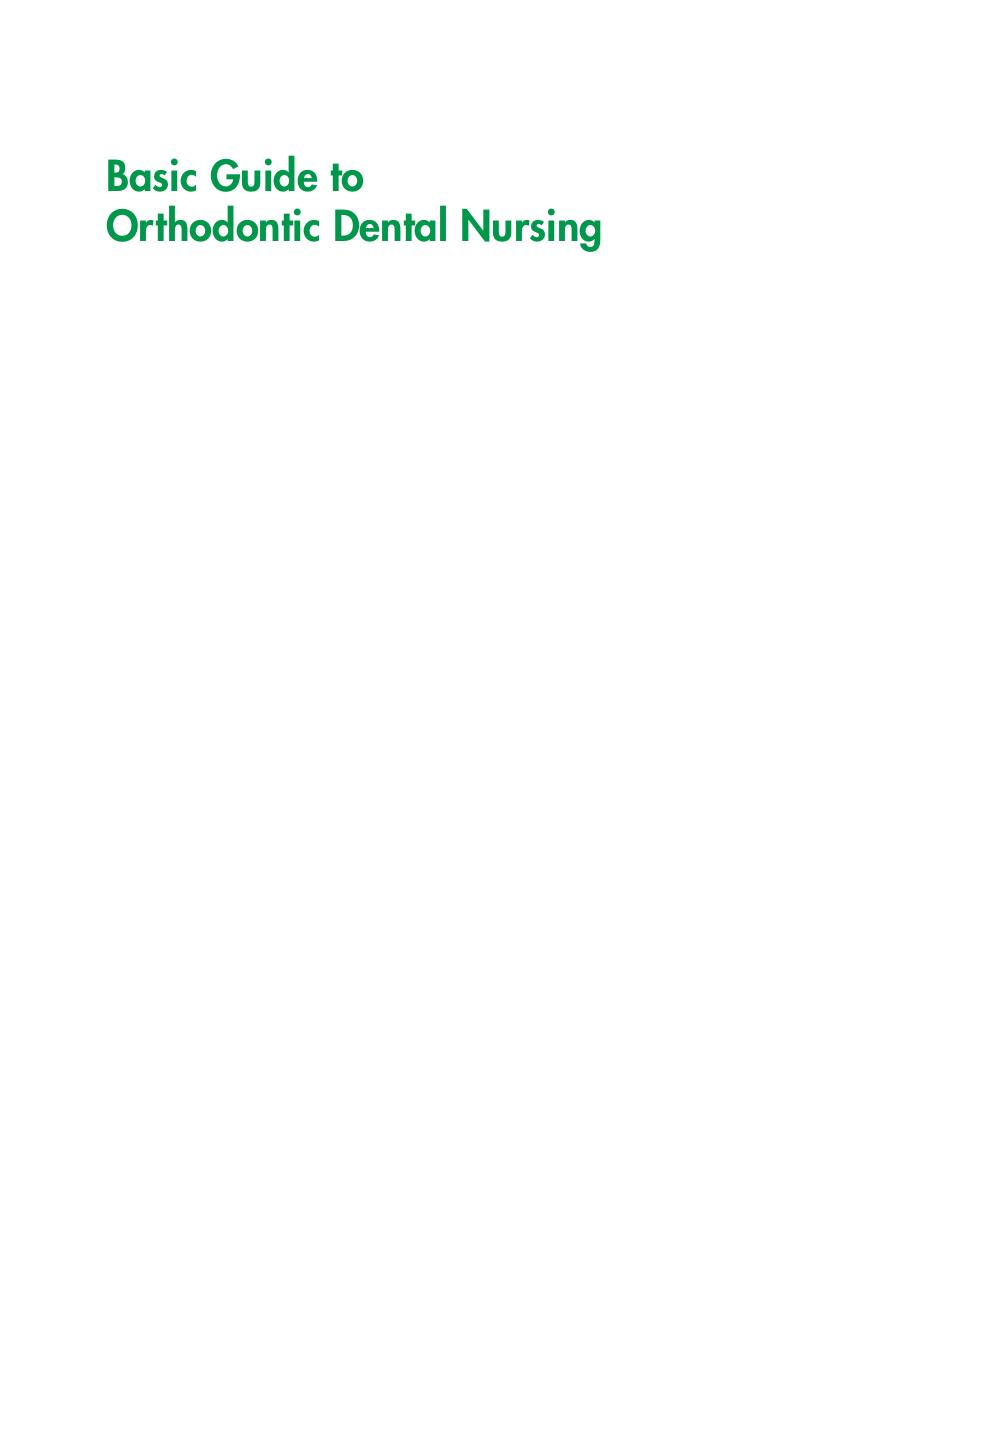 Basic Guide to Orthodontic Dental Nursing (2021)